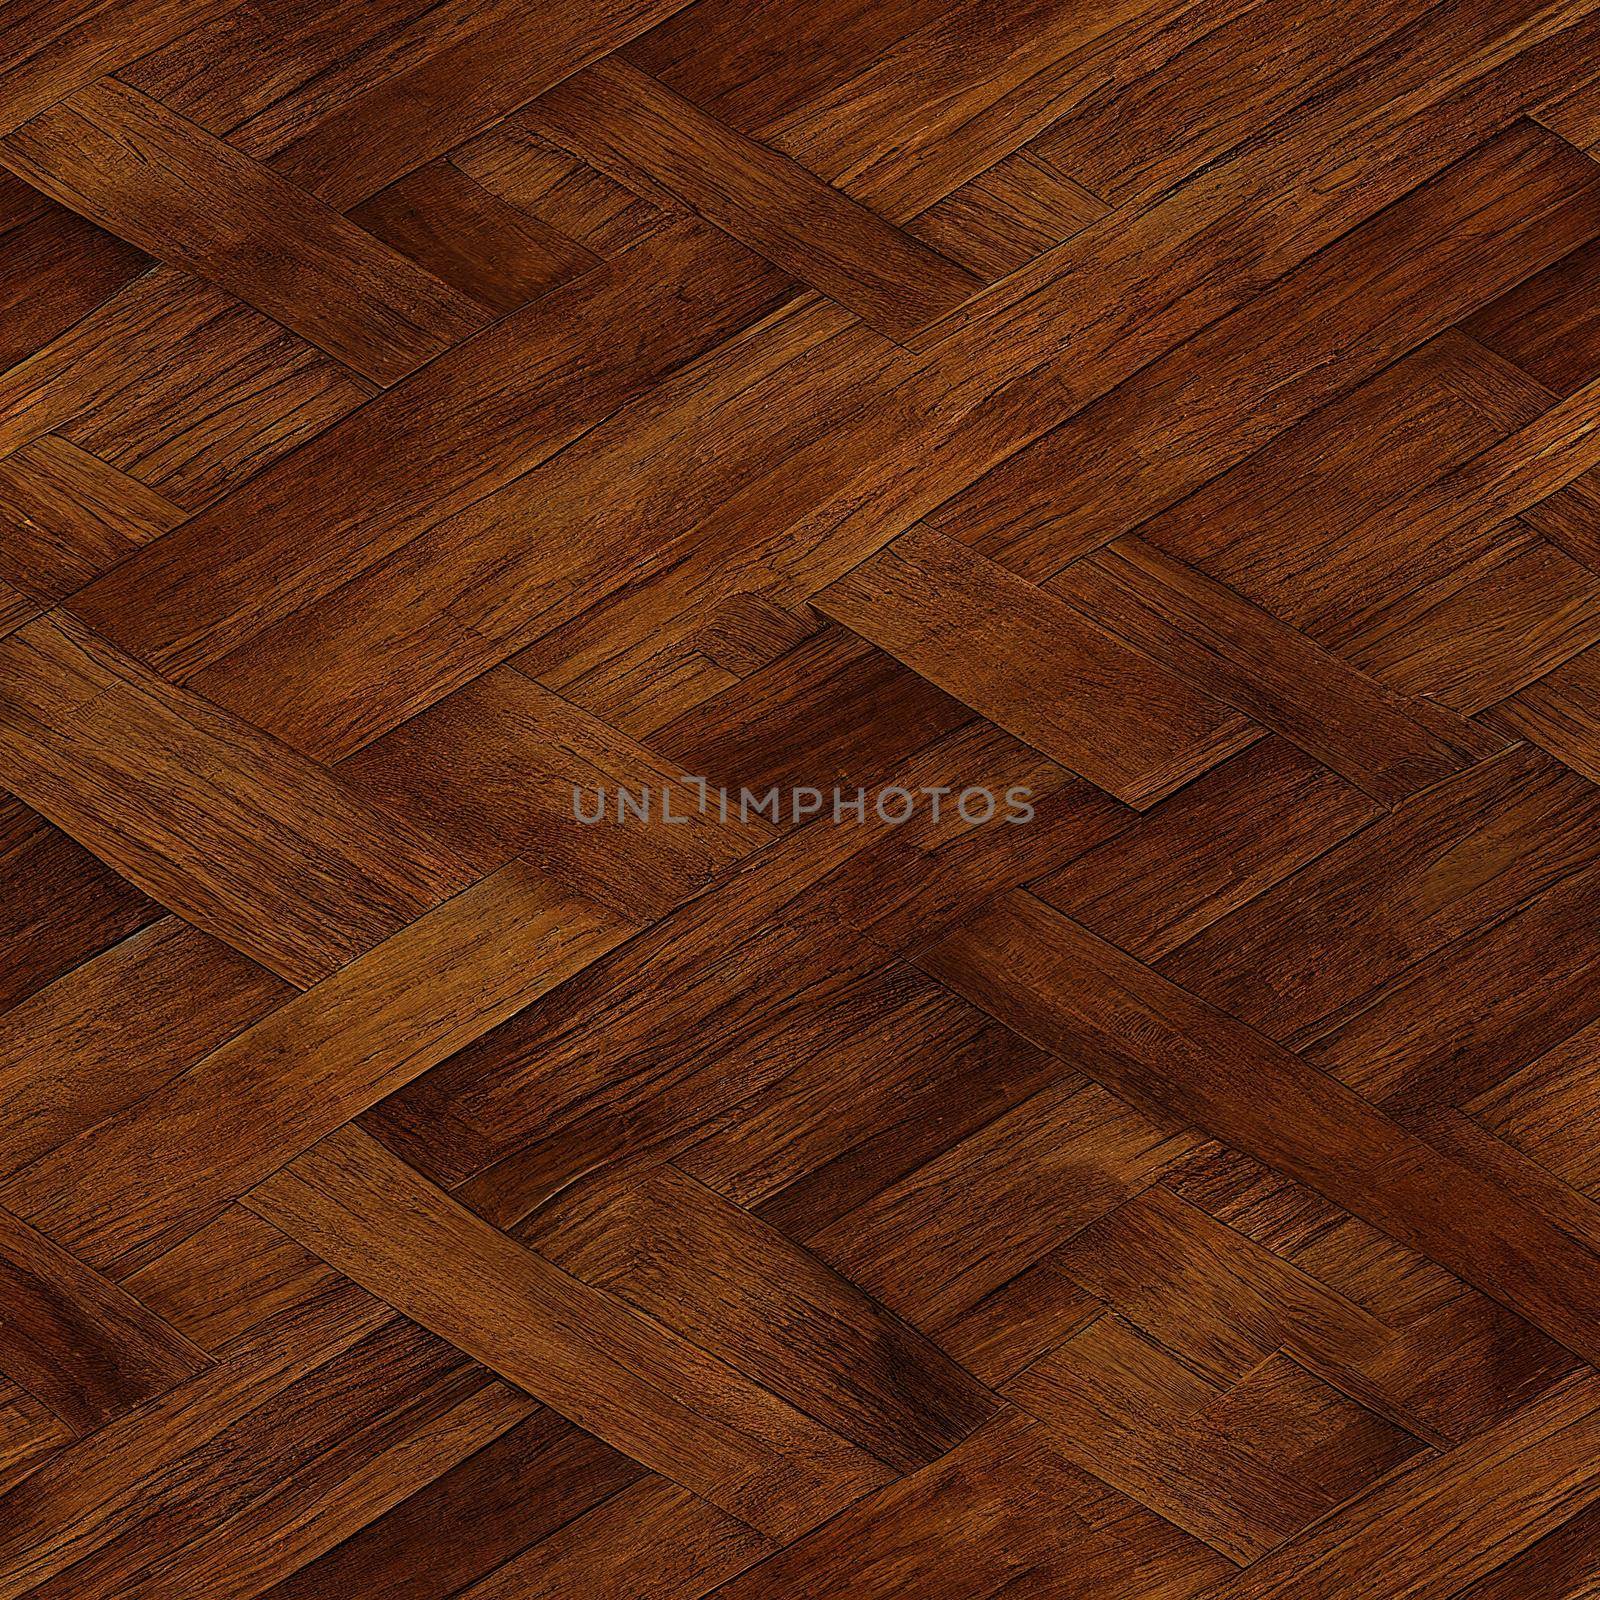 Natural wooden background, grunge parquet flooring design seamless texture by 2ragon